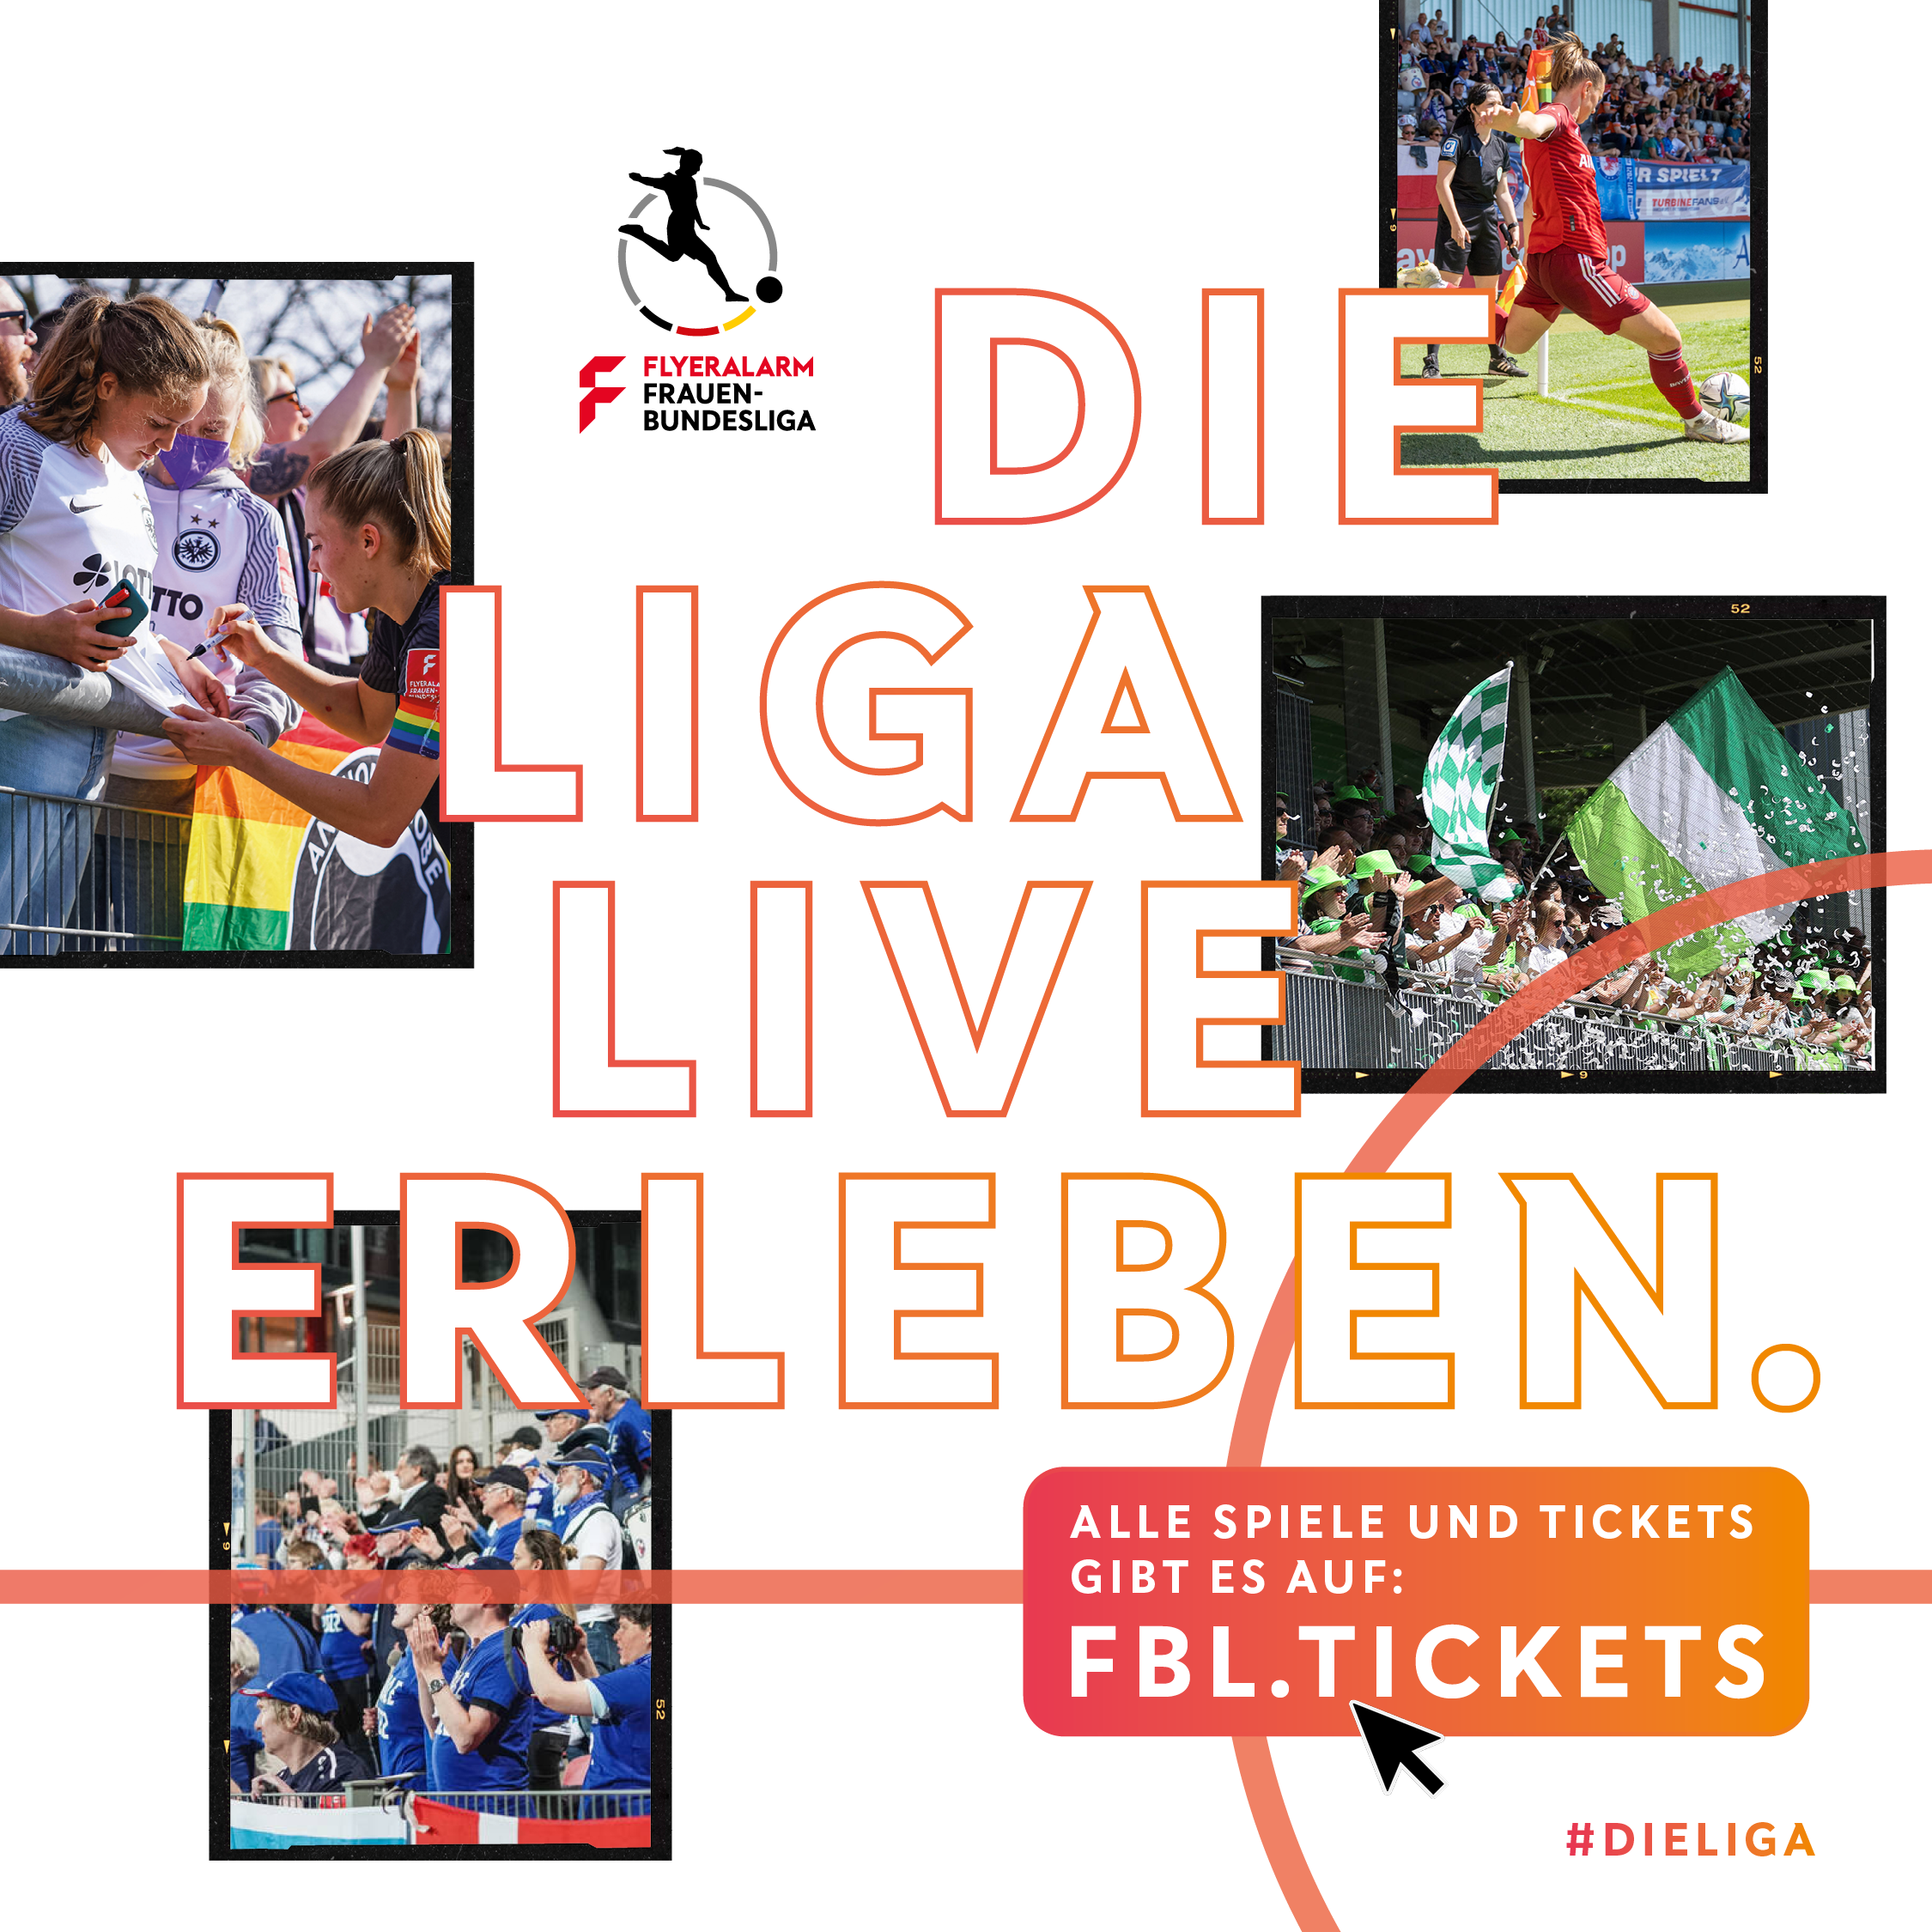 Tickets der SV Meppen-Frauen über gemeinsame Plattform der FLYERALARM Frauen -Bundesliga erhältlich